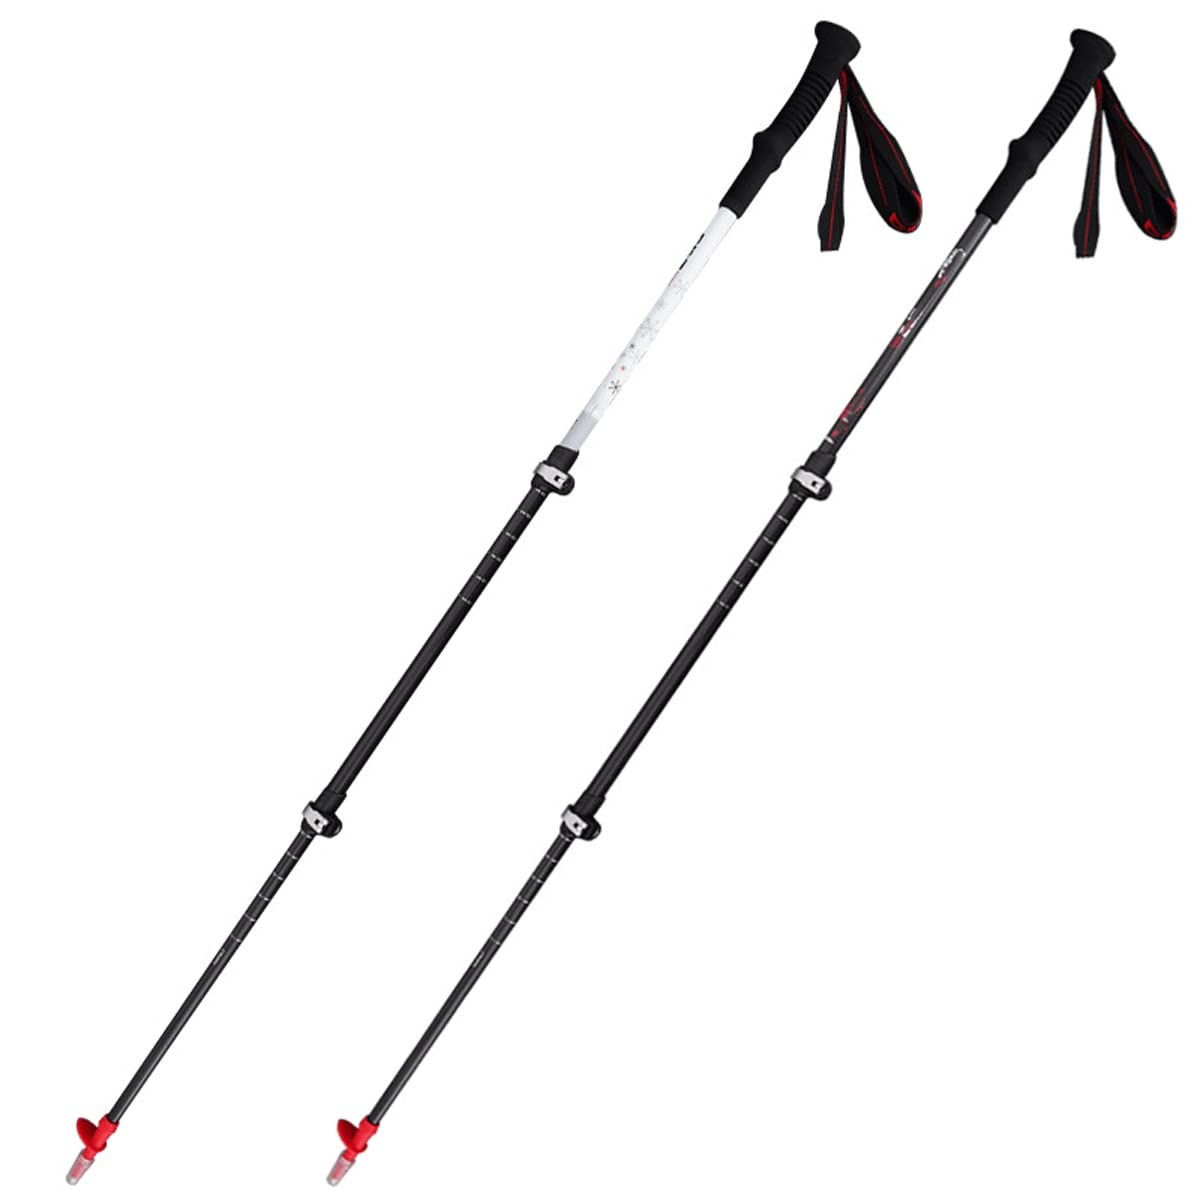 送料無料LUYILA Carbon Fiber Trekking Poles62-135 Cm Adjustable Travel Hiking Pole Telescopic Lightweight Hiking Poles w